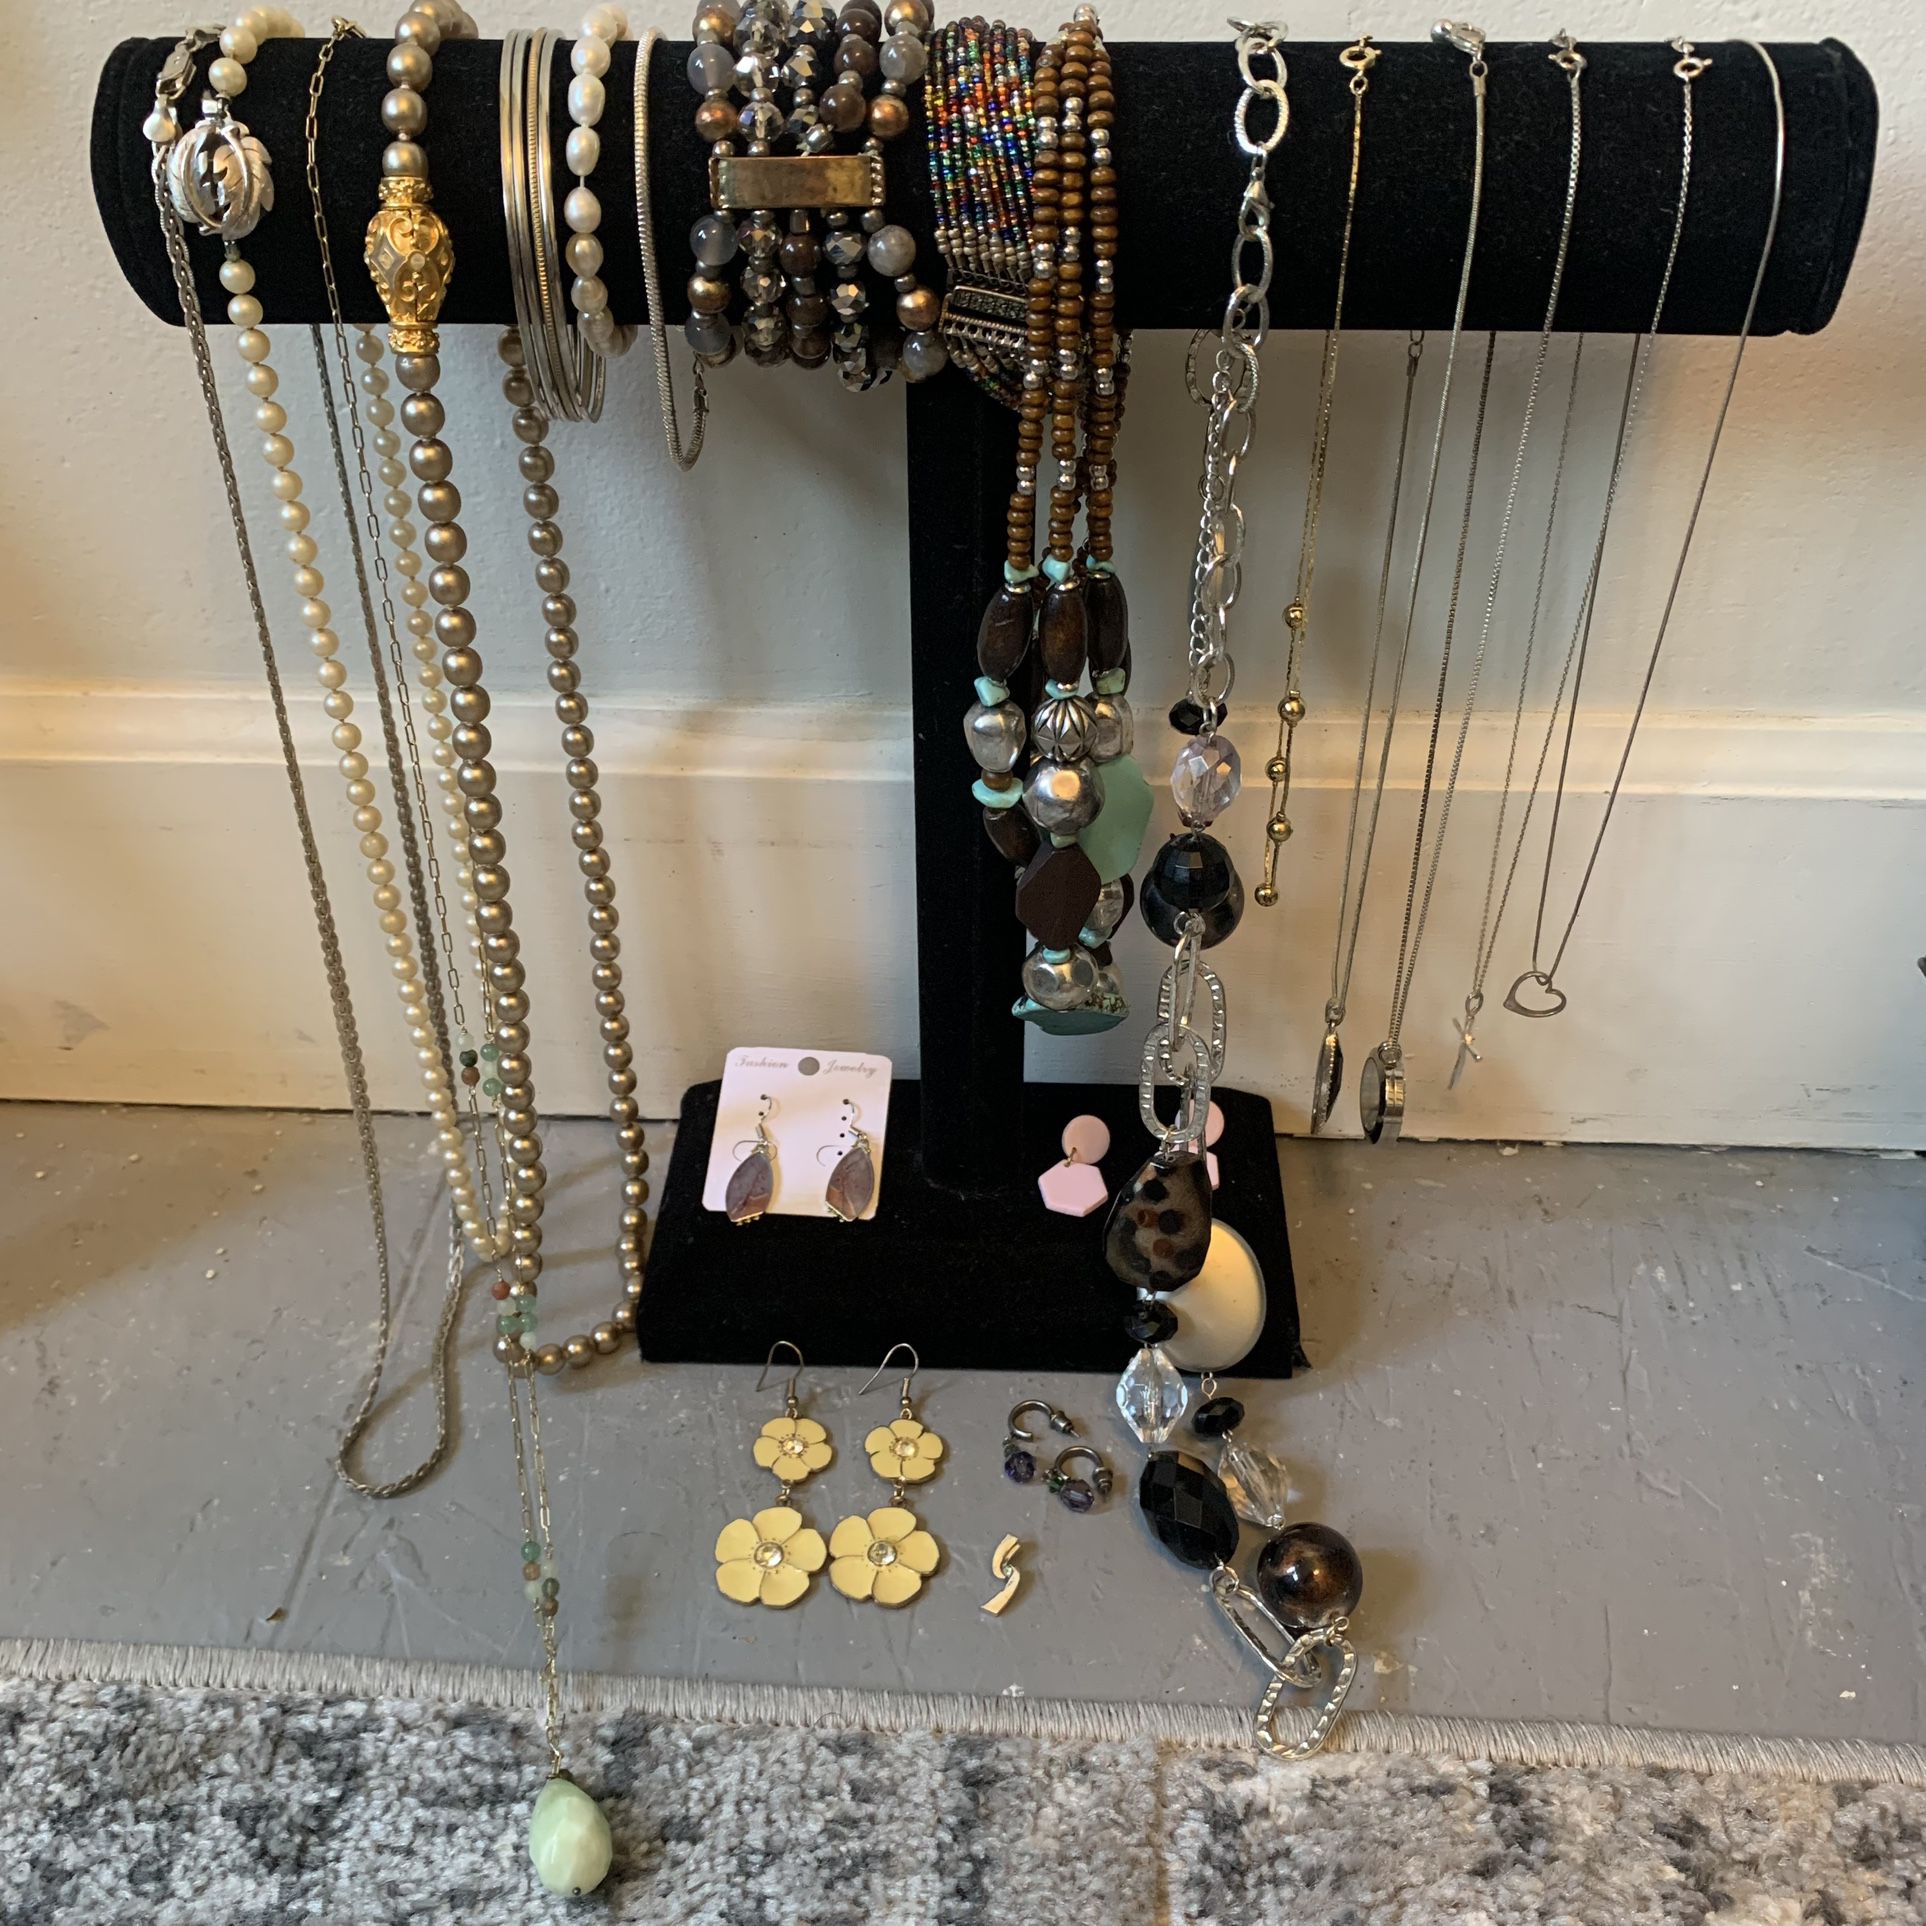 Jewelry - Necklaces, Bracelets, Earrings